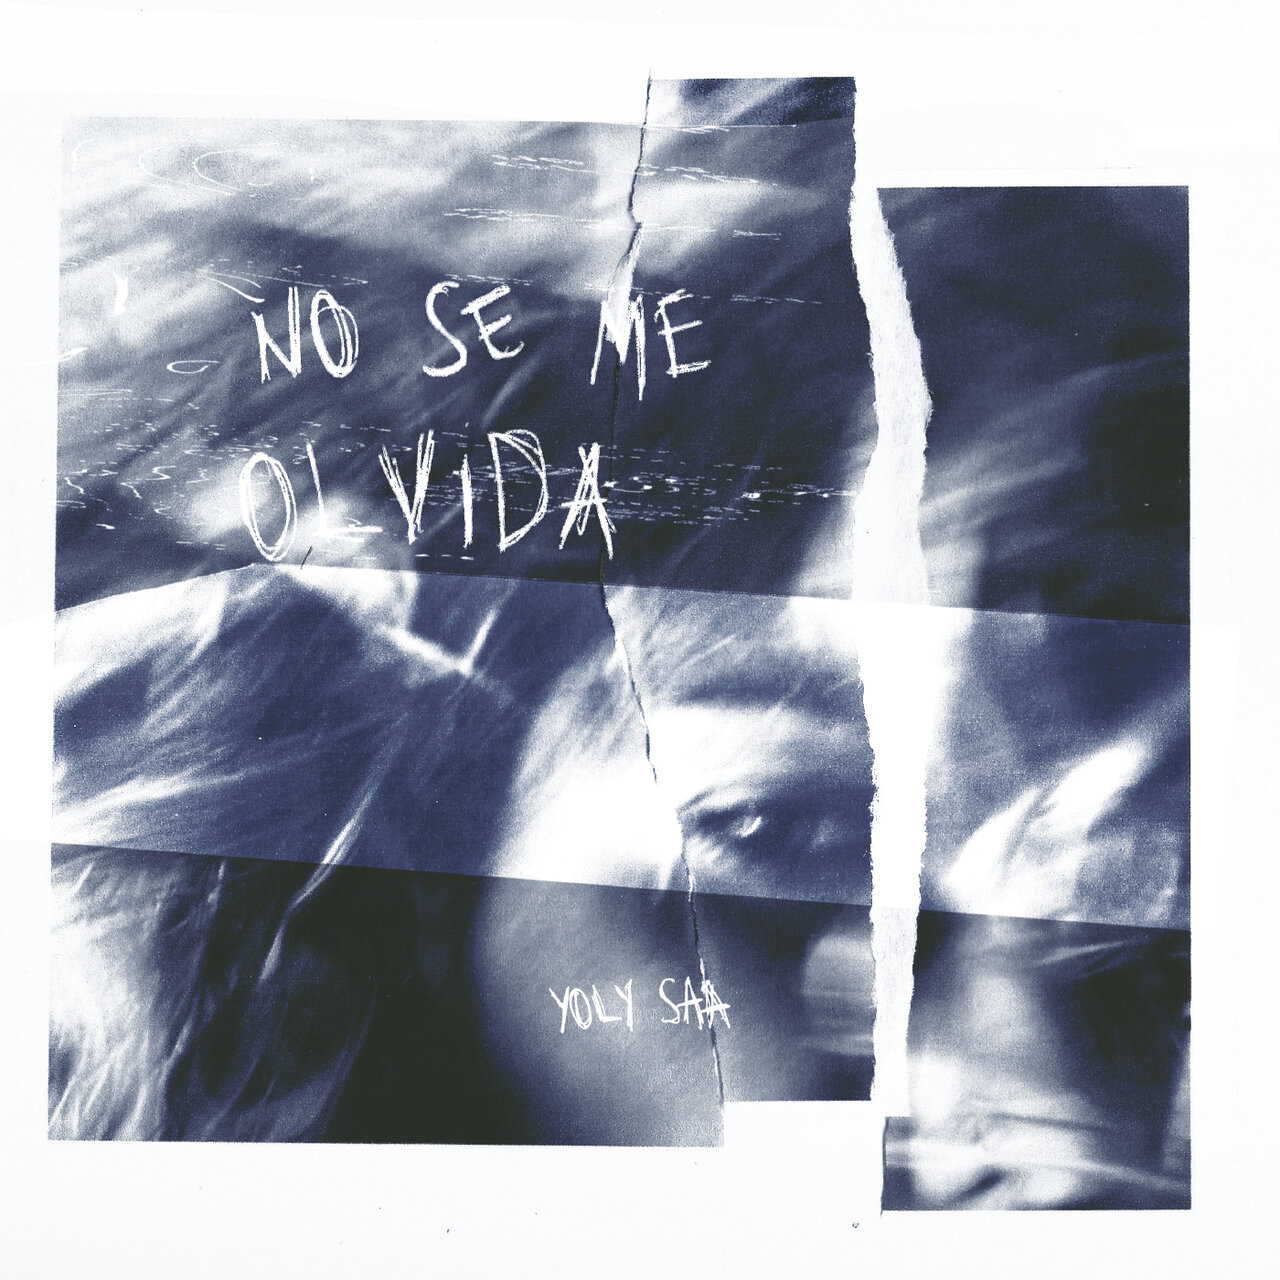 Yoly Saa — No se me olvida cover artwork